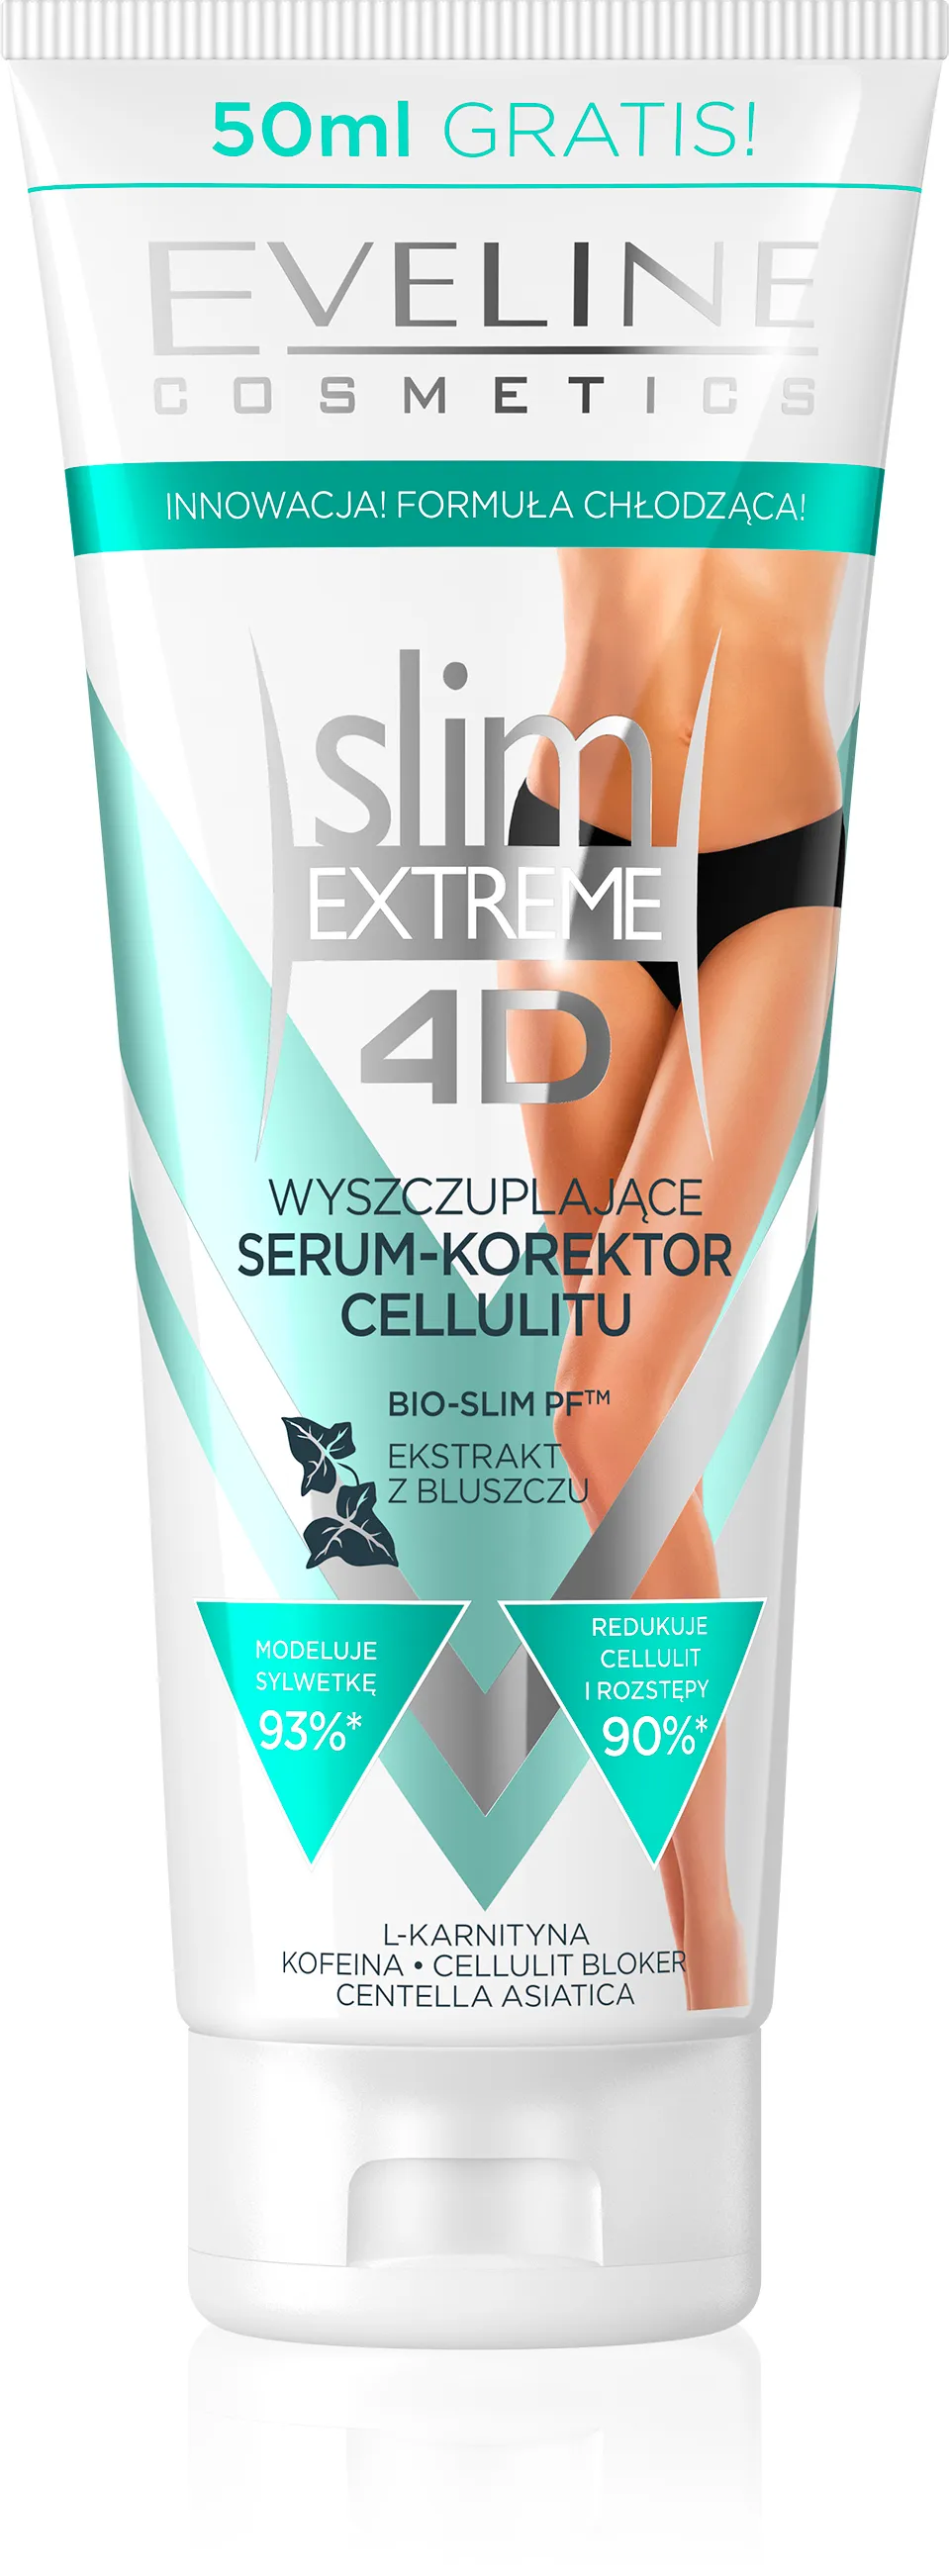 Eveline Slim Extreme 4D, wyszczuplające serum-korektor cellulitu, 250 ml